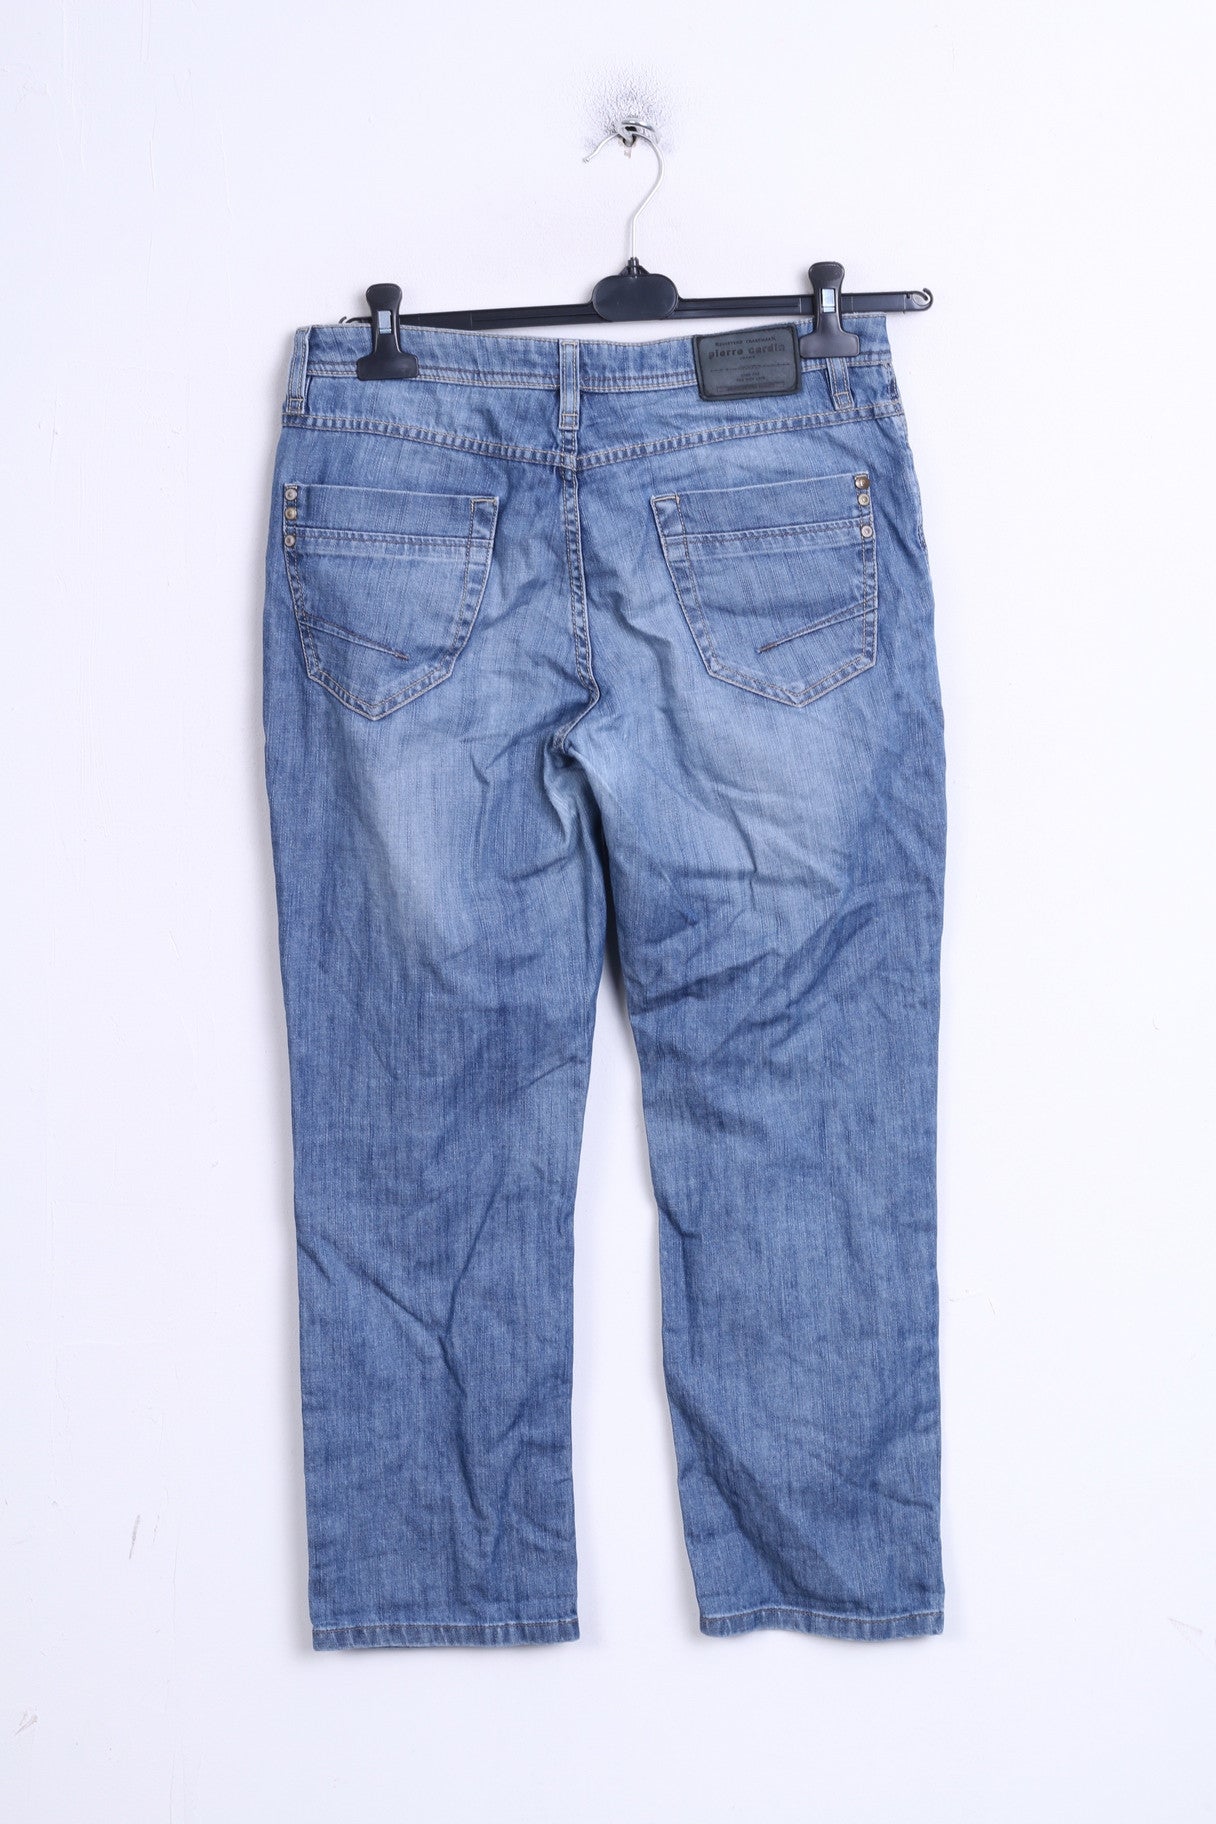 Pierre Cardin Mens W38 Trousers Cotton Navy Jeanswear